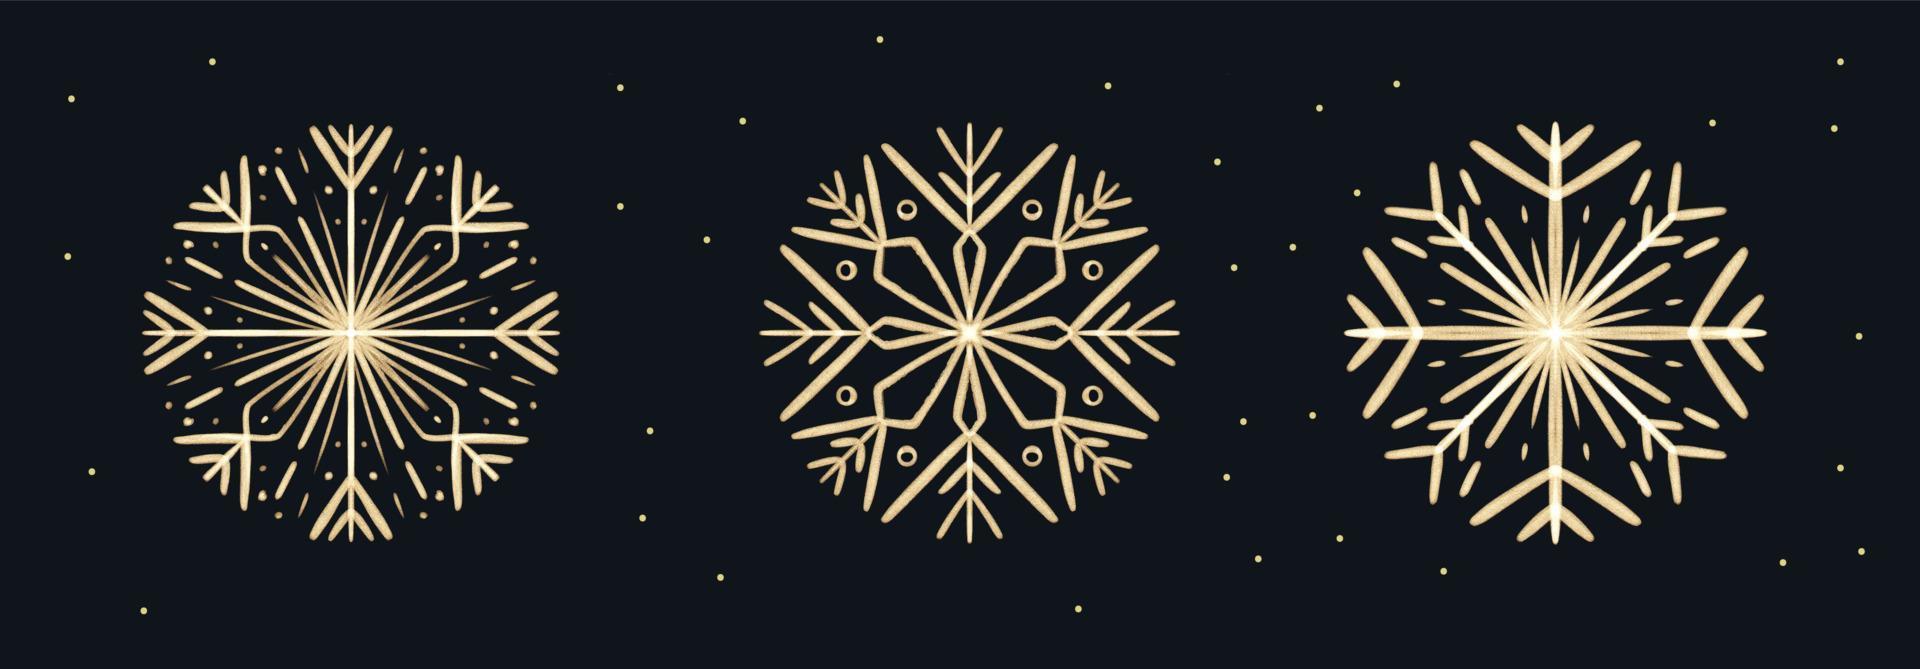 uppsättning av penseldrag hand dragen guld snöflingor för jul design. vinter- högtider isolerat element vektor